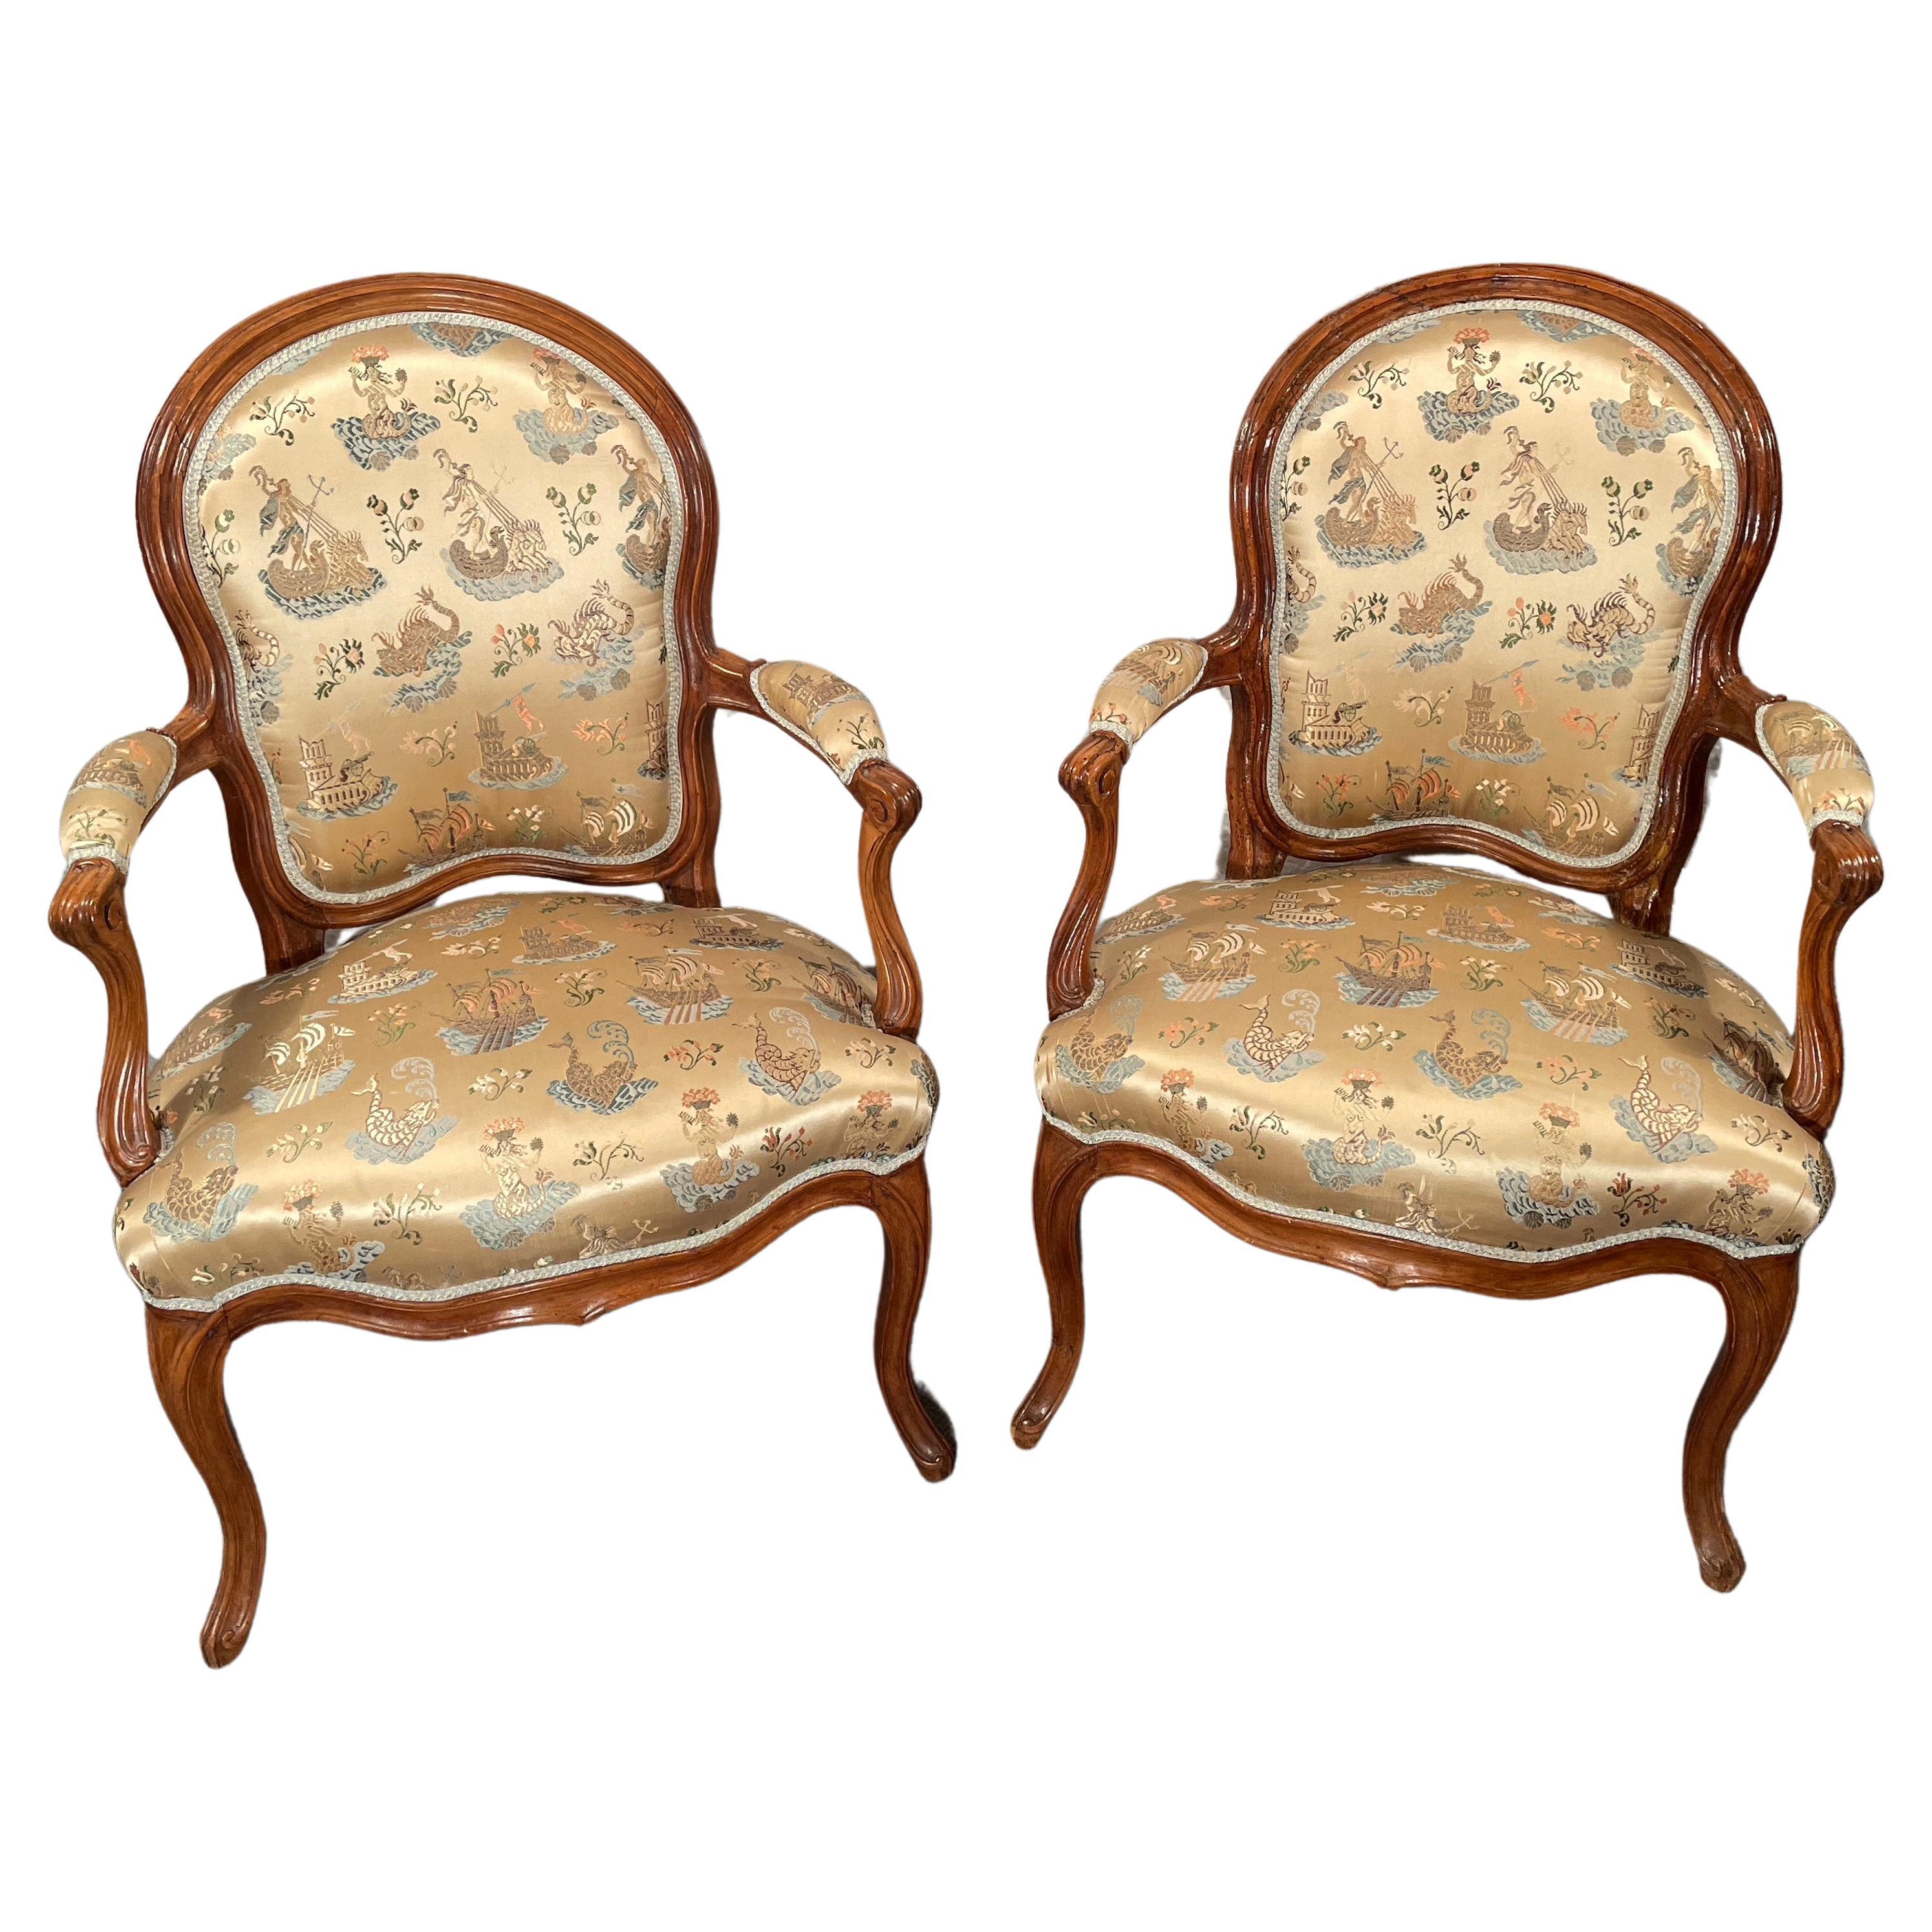 Paire de fauteuils Louis XV du XVIIIe siècle, France 1760